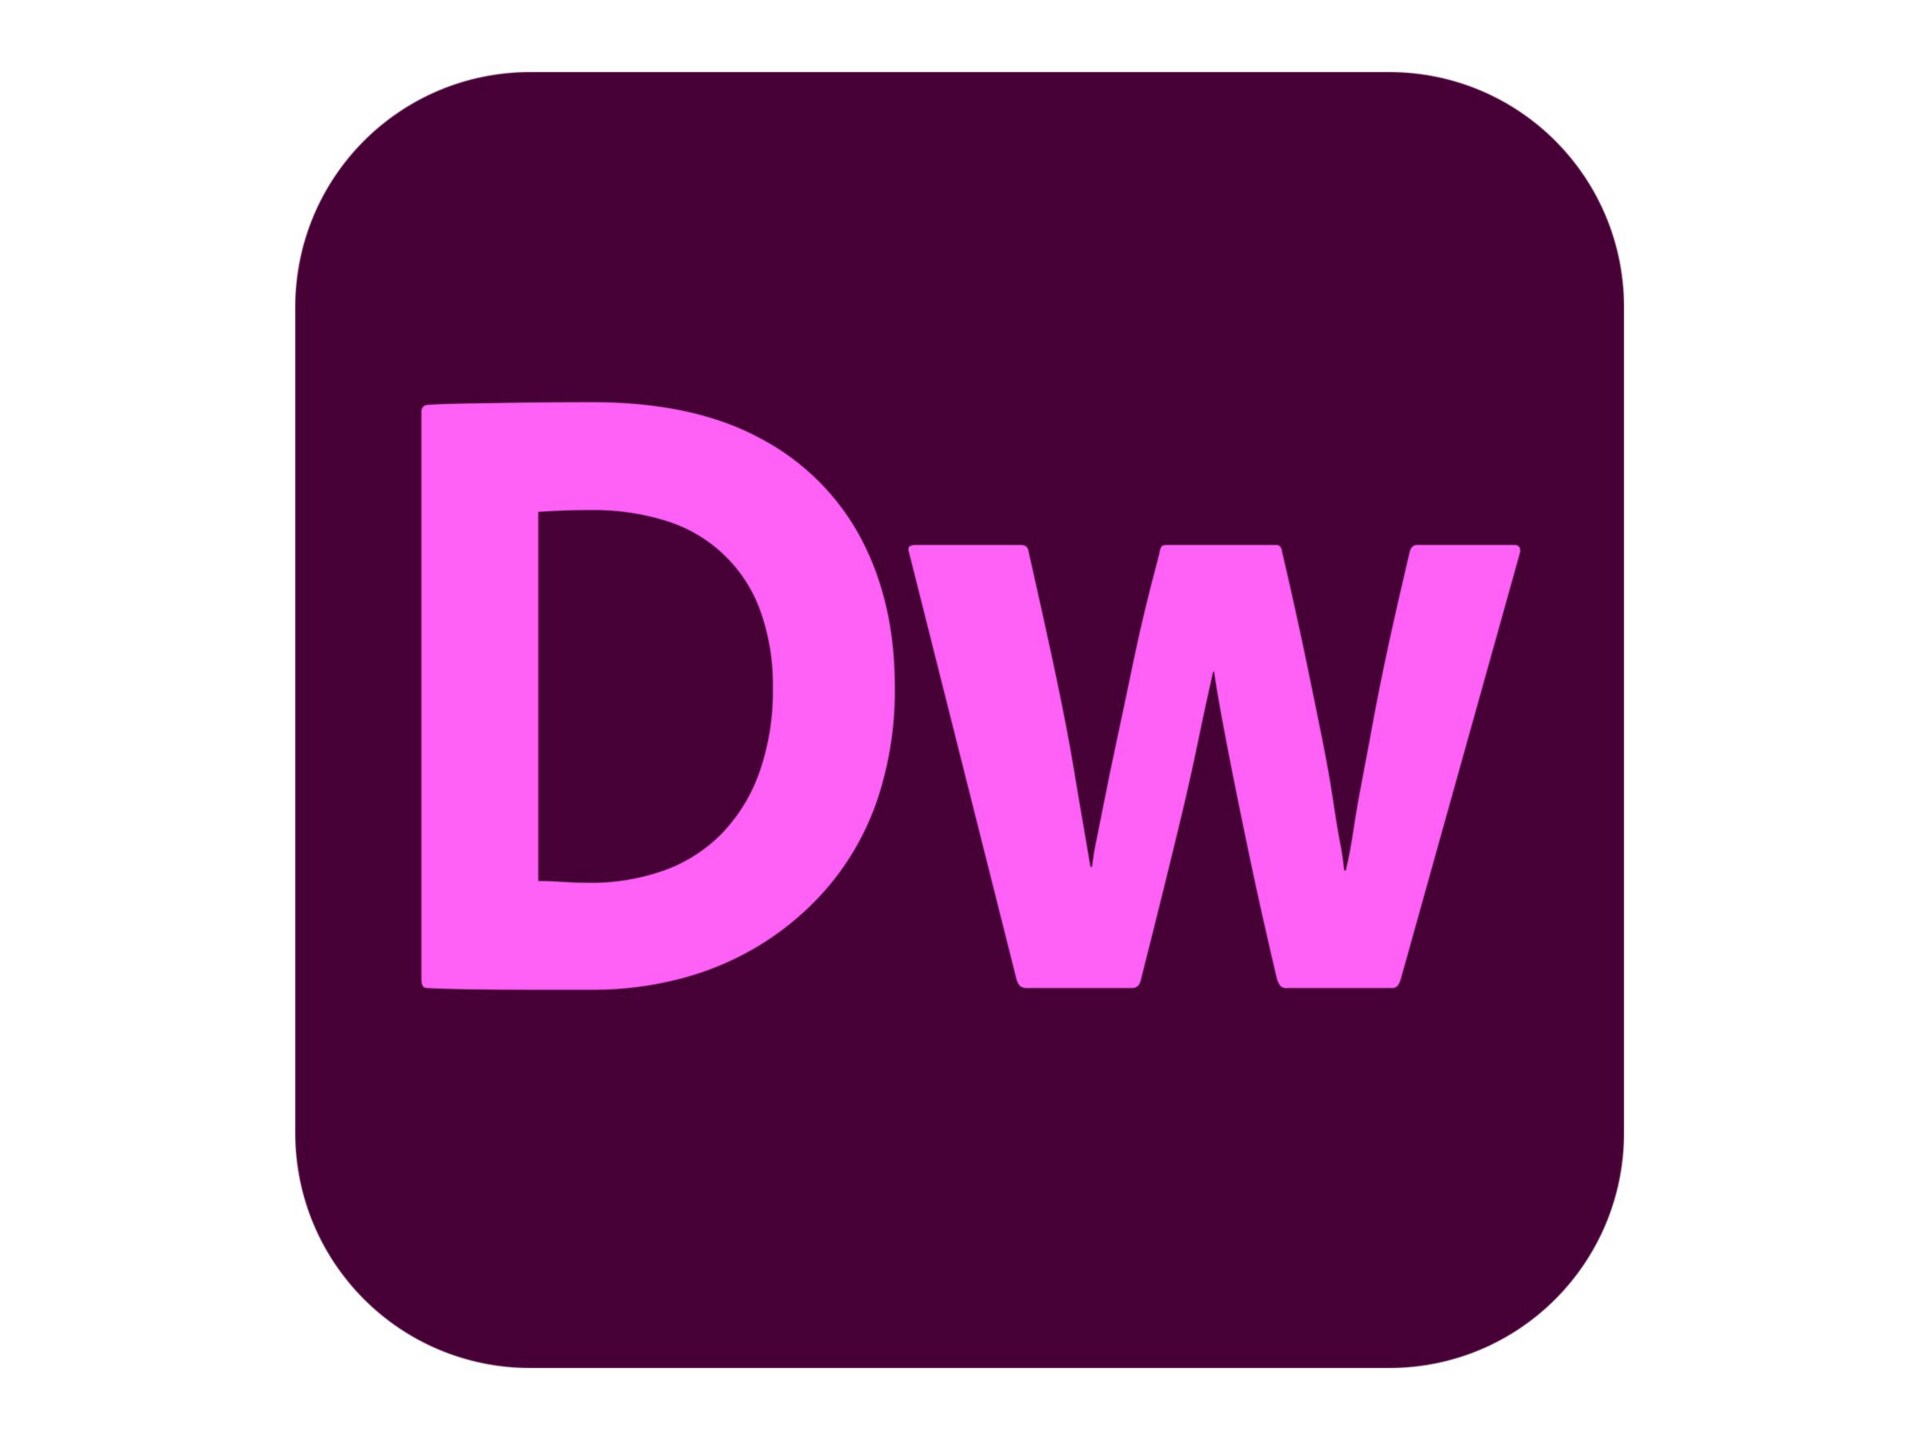 Adobe Dreamweaver CC for Enterprise - Subscription New (2 months) - 1 named